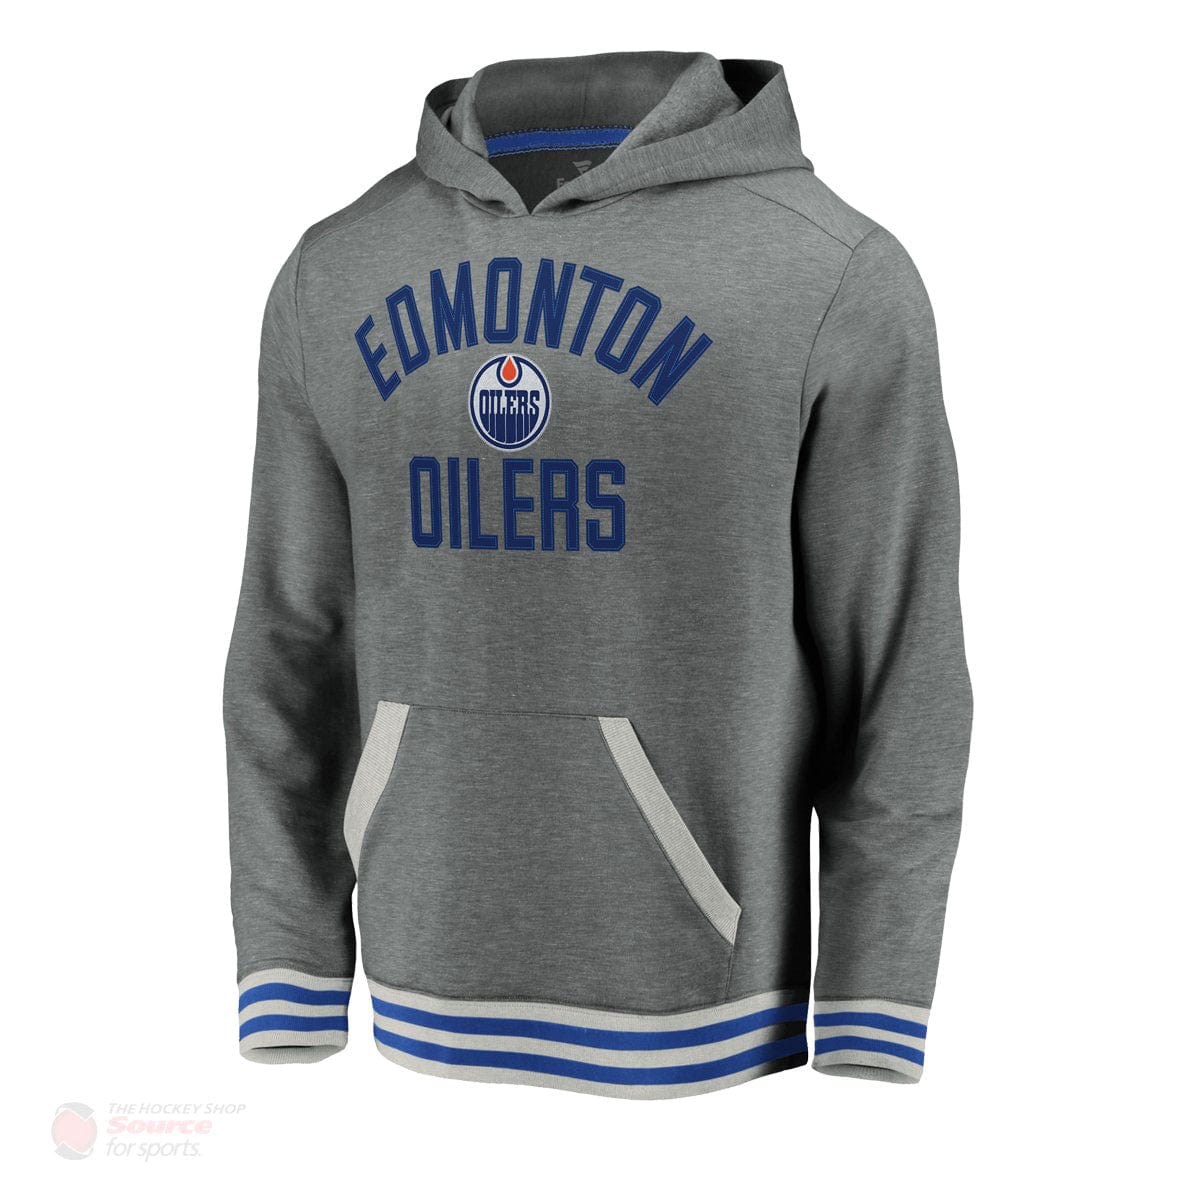 Edmonton Oilers Fanatics Upperclassmen Vintage Pullover Mens Hoody